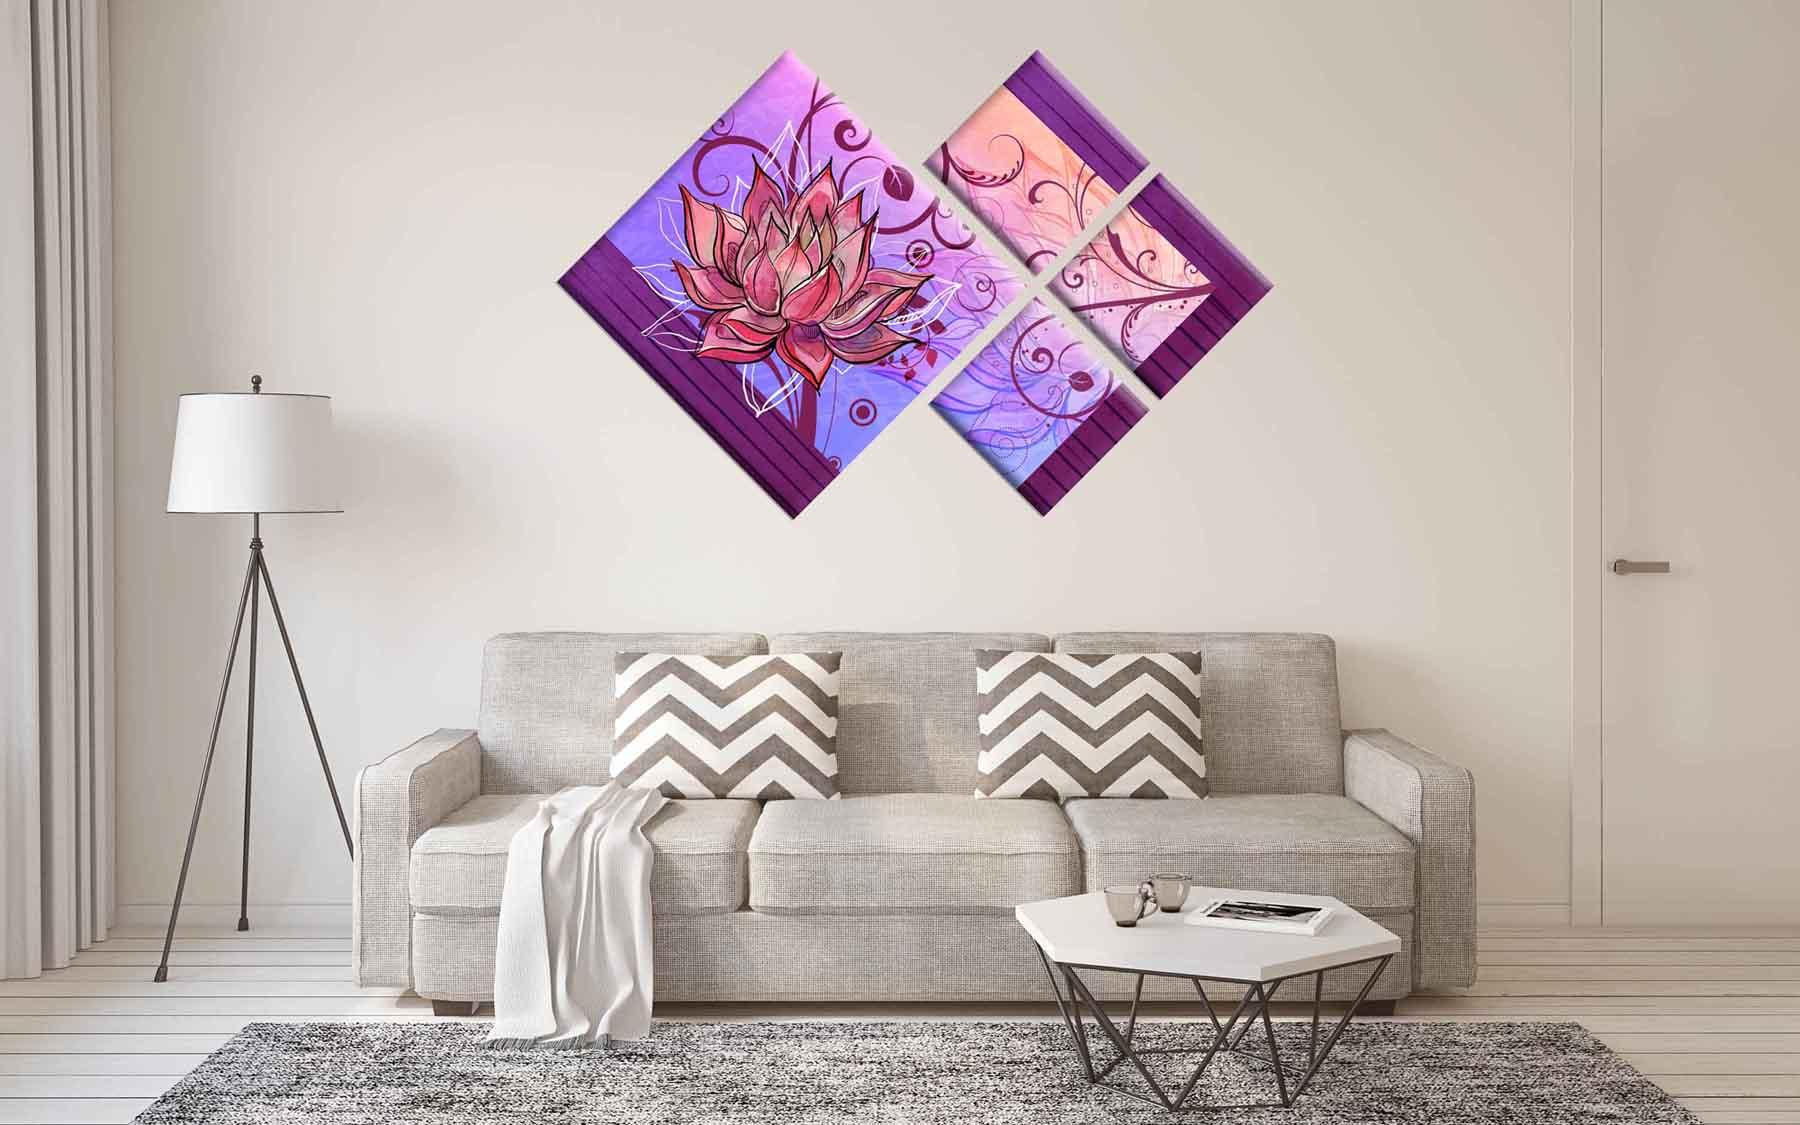 Moduļu attēls - smalks zieds uz violeta fona